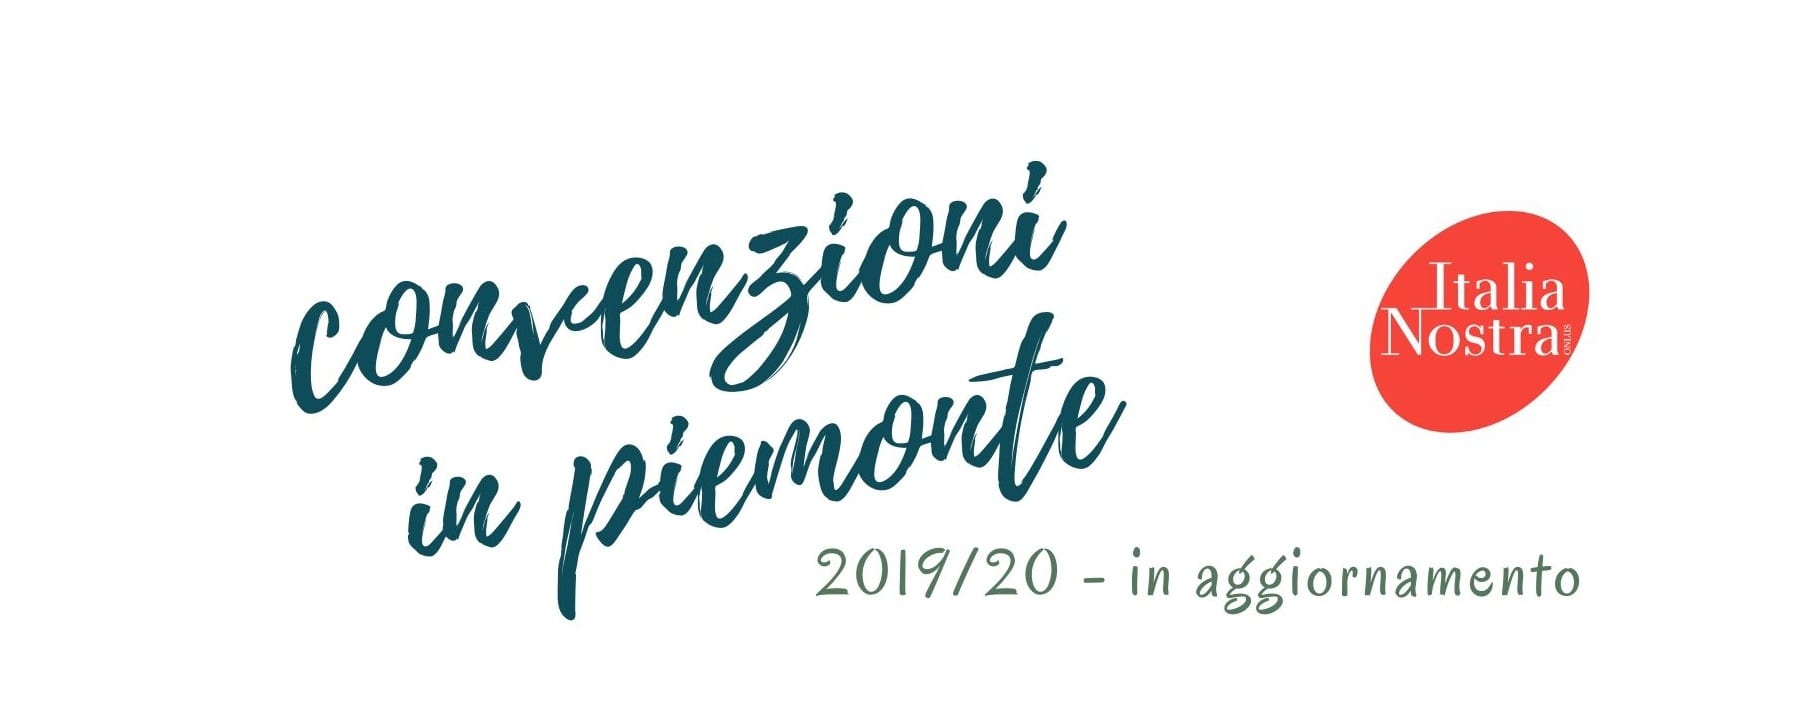 Convenzioni Italia Nostra sezione Piemonte